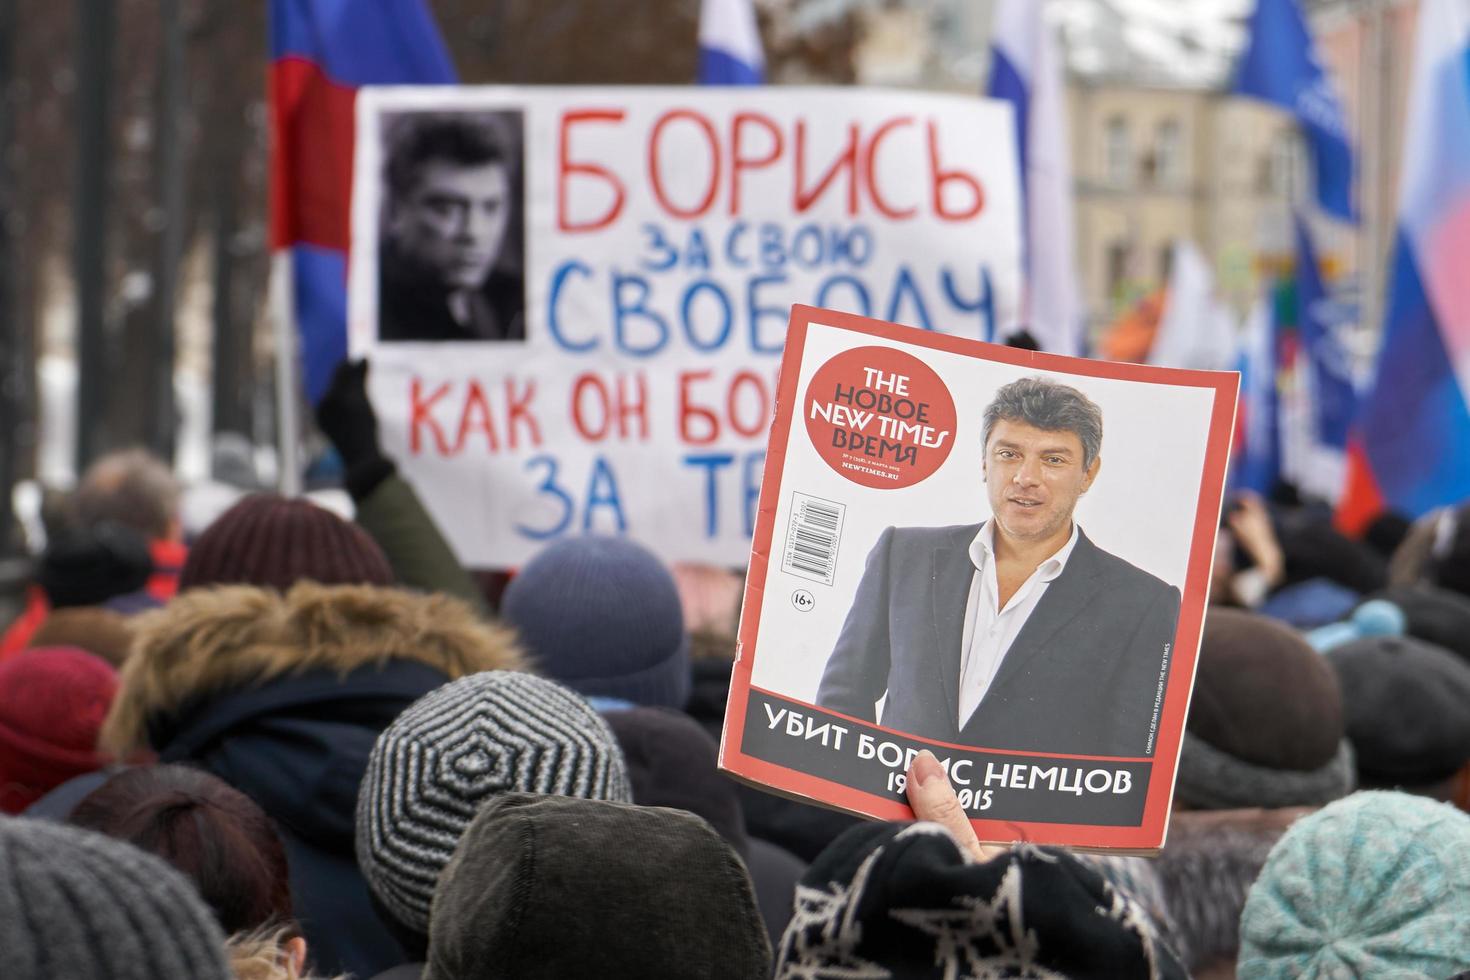 Mosca, Russia - 24 febbraio 2019. persone che trasportano bandiere e striscioni russi sulla marcia della memoria di nemtsov a Mosca foto